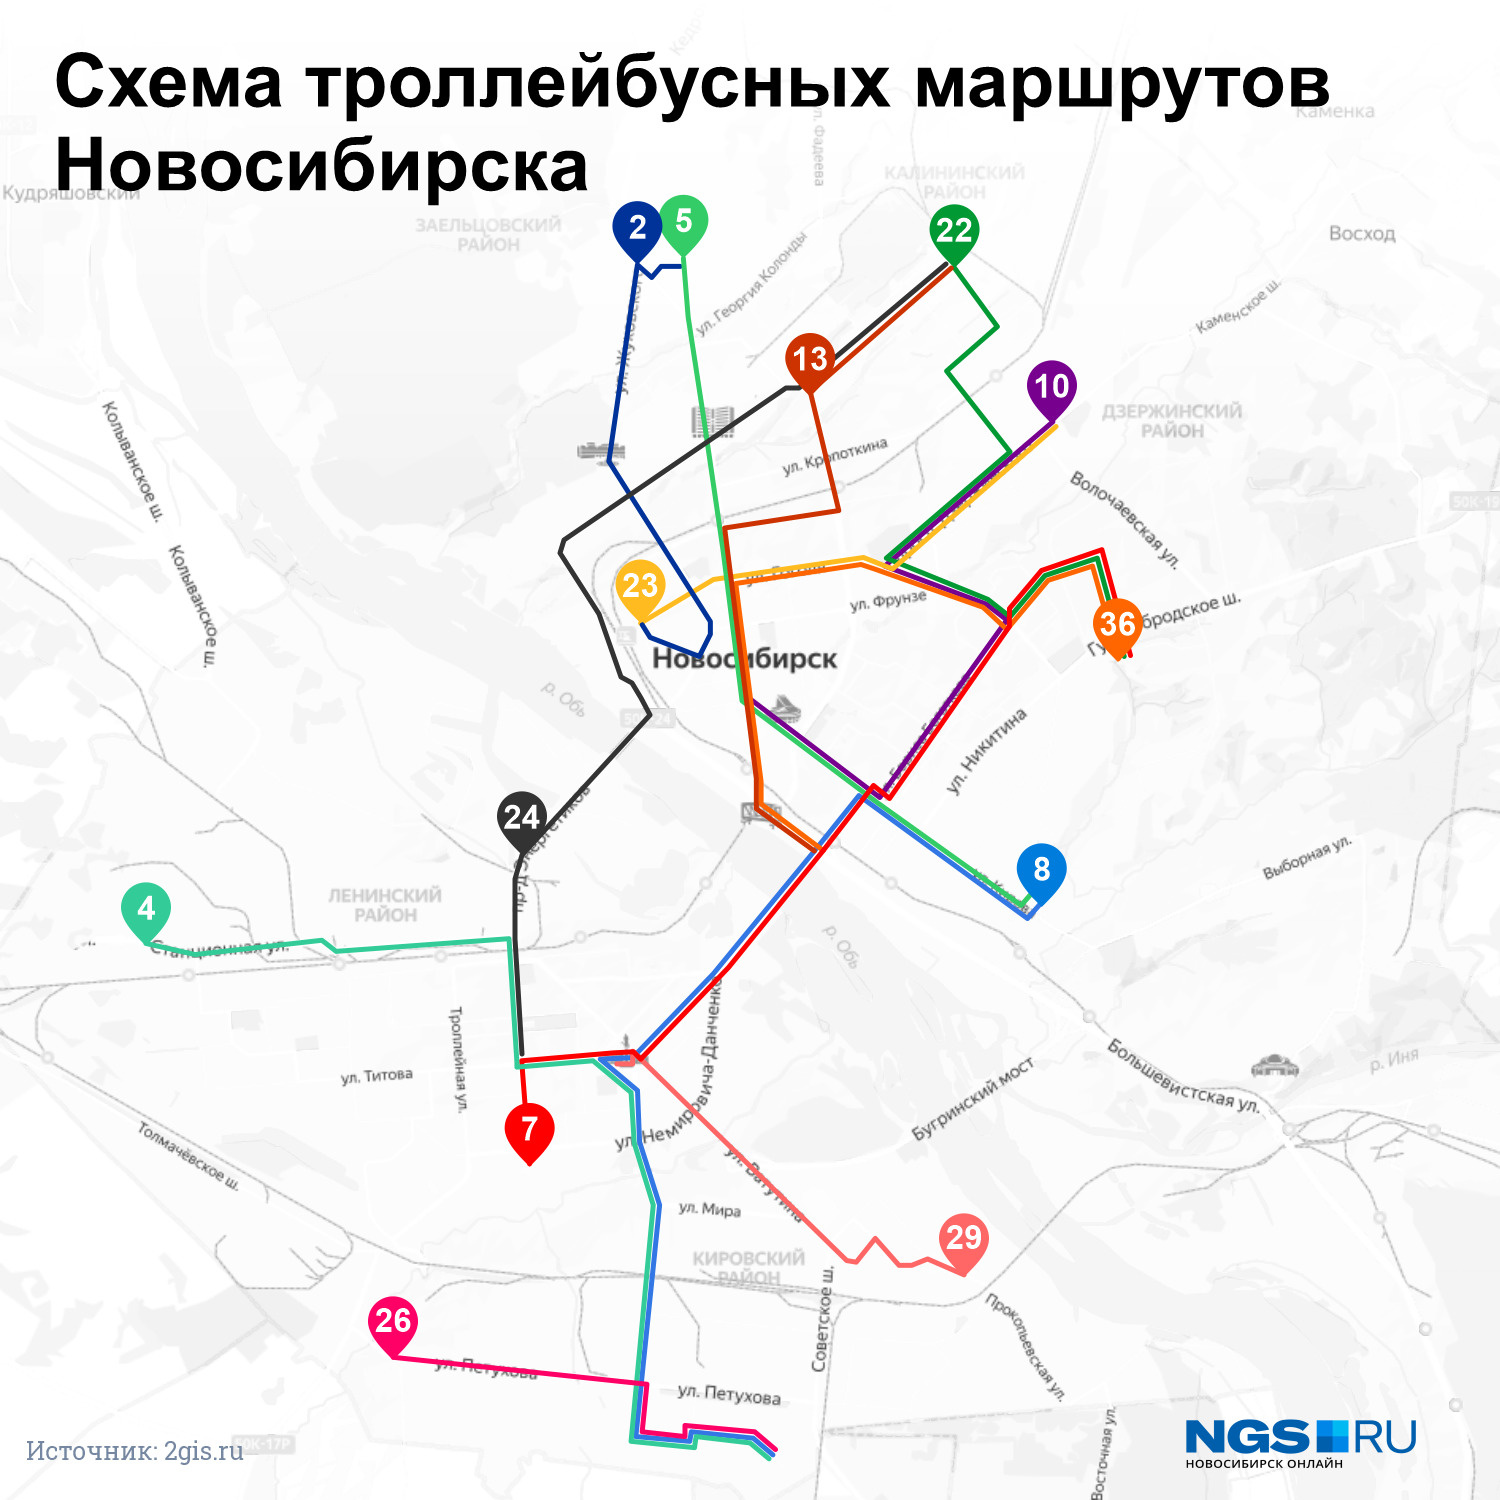 Схема троллейбусных маршрутов Новосибирск. Маршрут 13. Троллейбус 1279 Новосибирский маршрут. Троллейбус 13 маршрут на карте